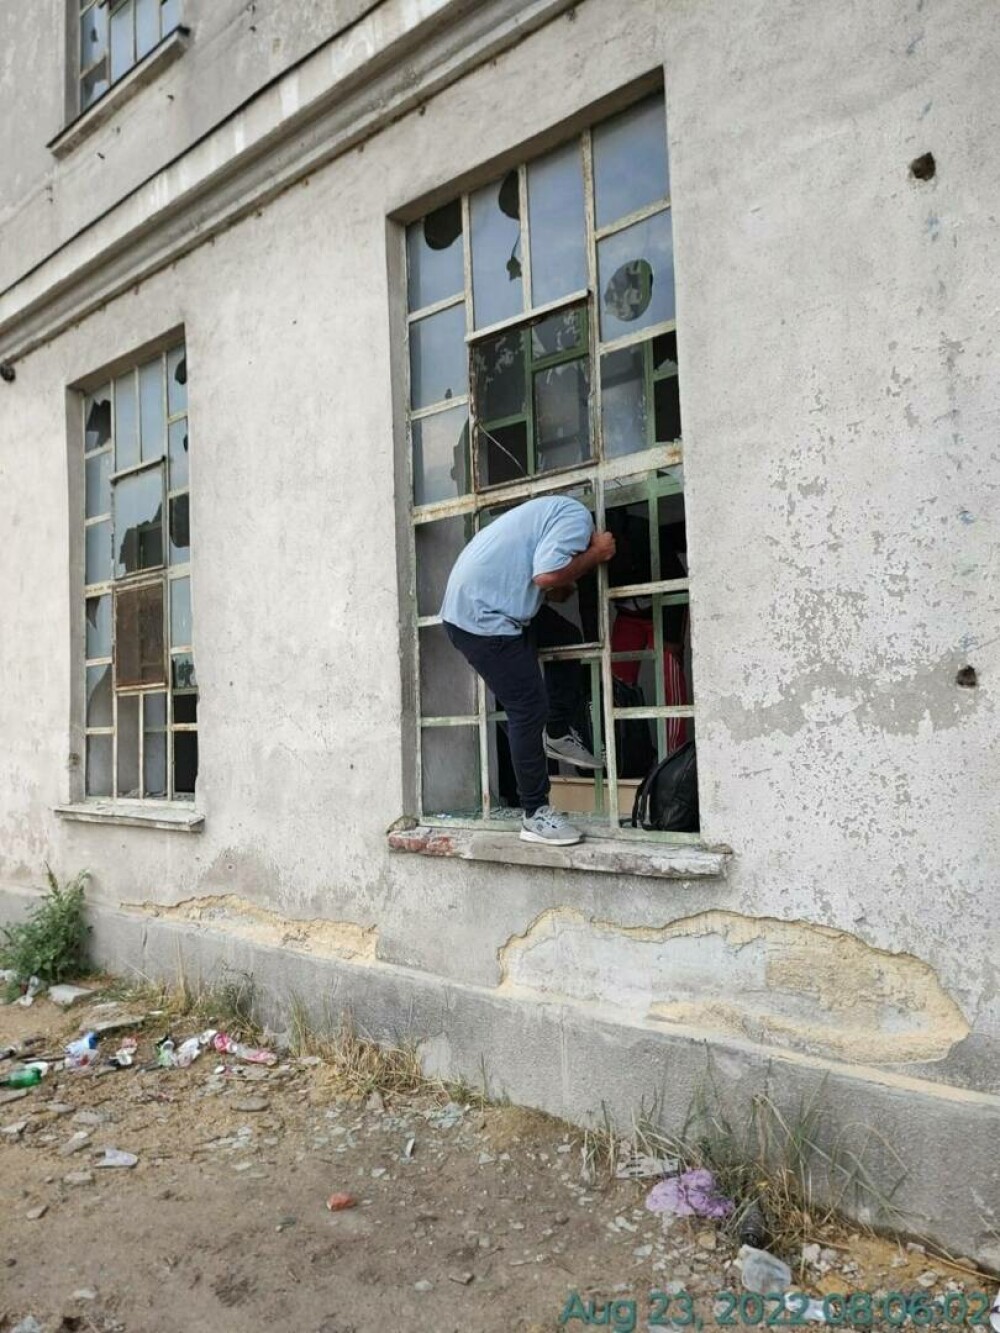 Peste 80 de migranți au fost depistați în clădirea dezafectată a unei fabrici din Timișoara | GALERIE FOTO - Imaginea 4